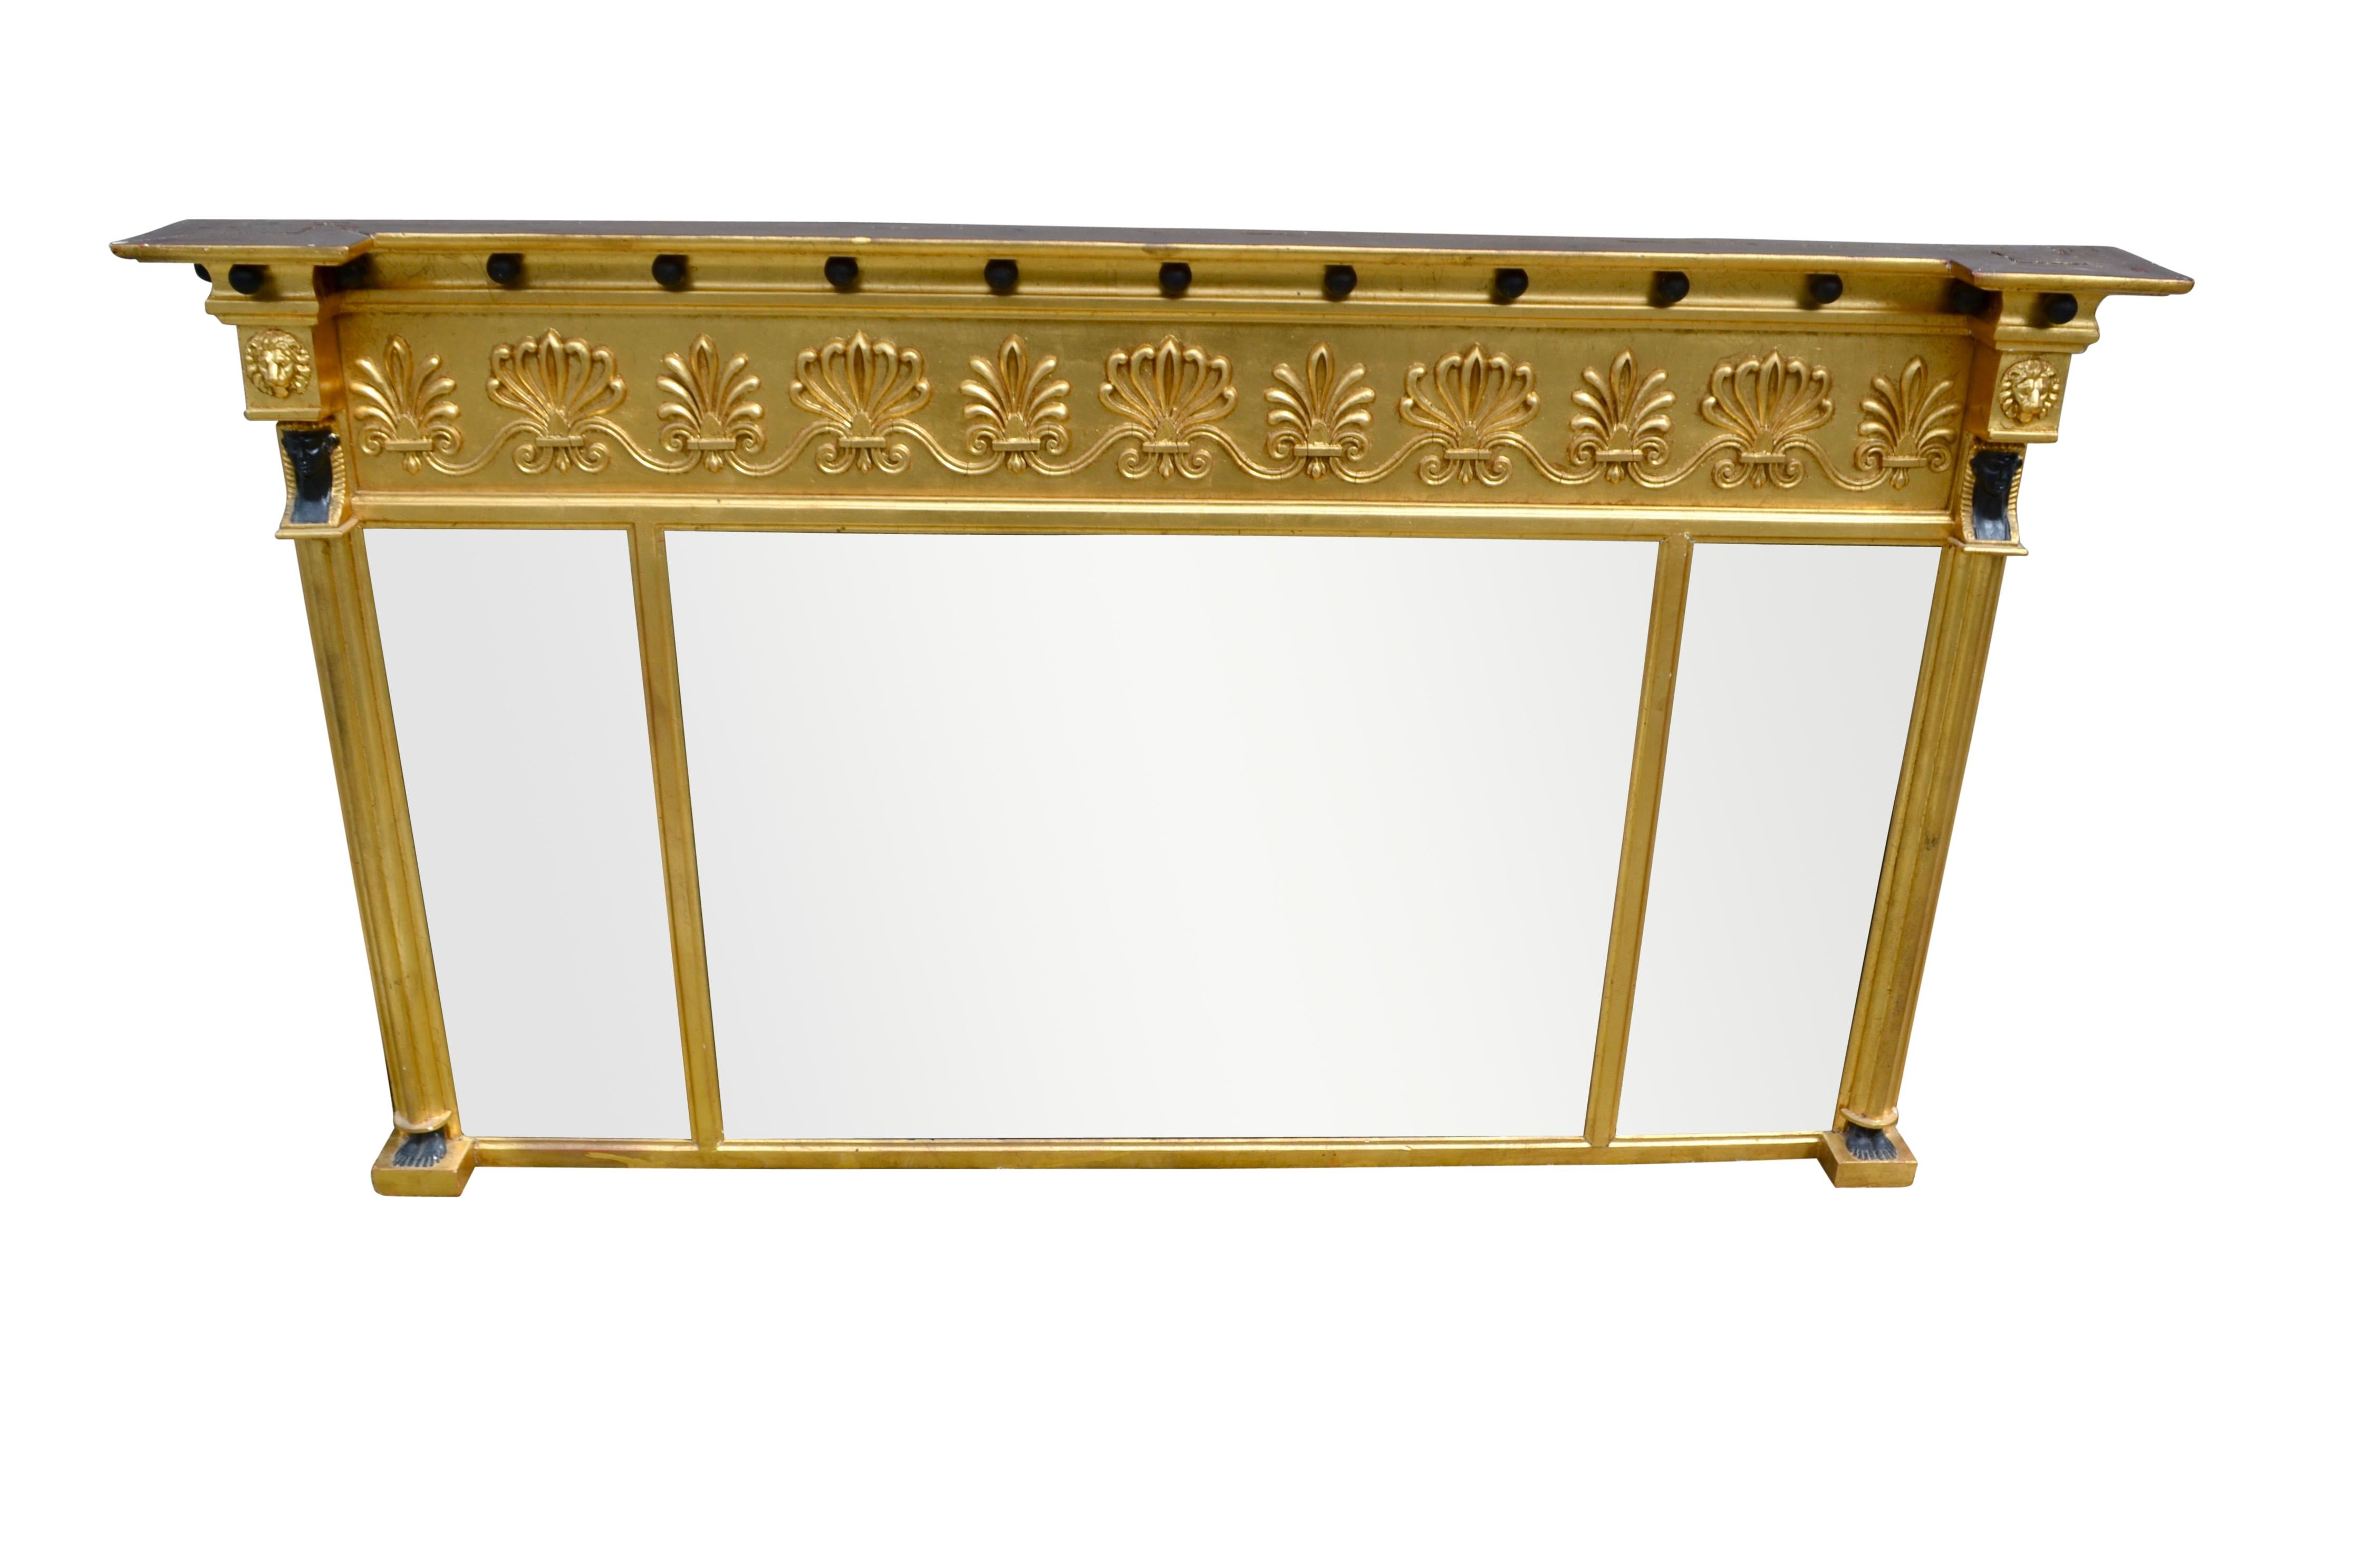 Un beau miroir trilatéral Régence en bois doré et composition, chaque miroir étant biseauté. La frise est décorée de boules ébénisées au-dessus d'acanthes et d'anthémones alternés. De chaque côté du cadre du miroir se trouve une colonne cannelée